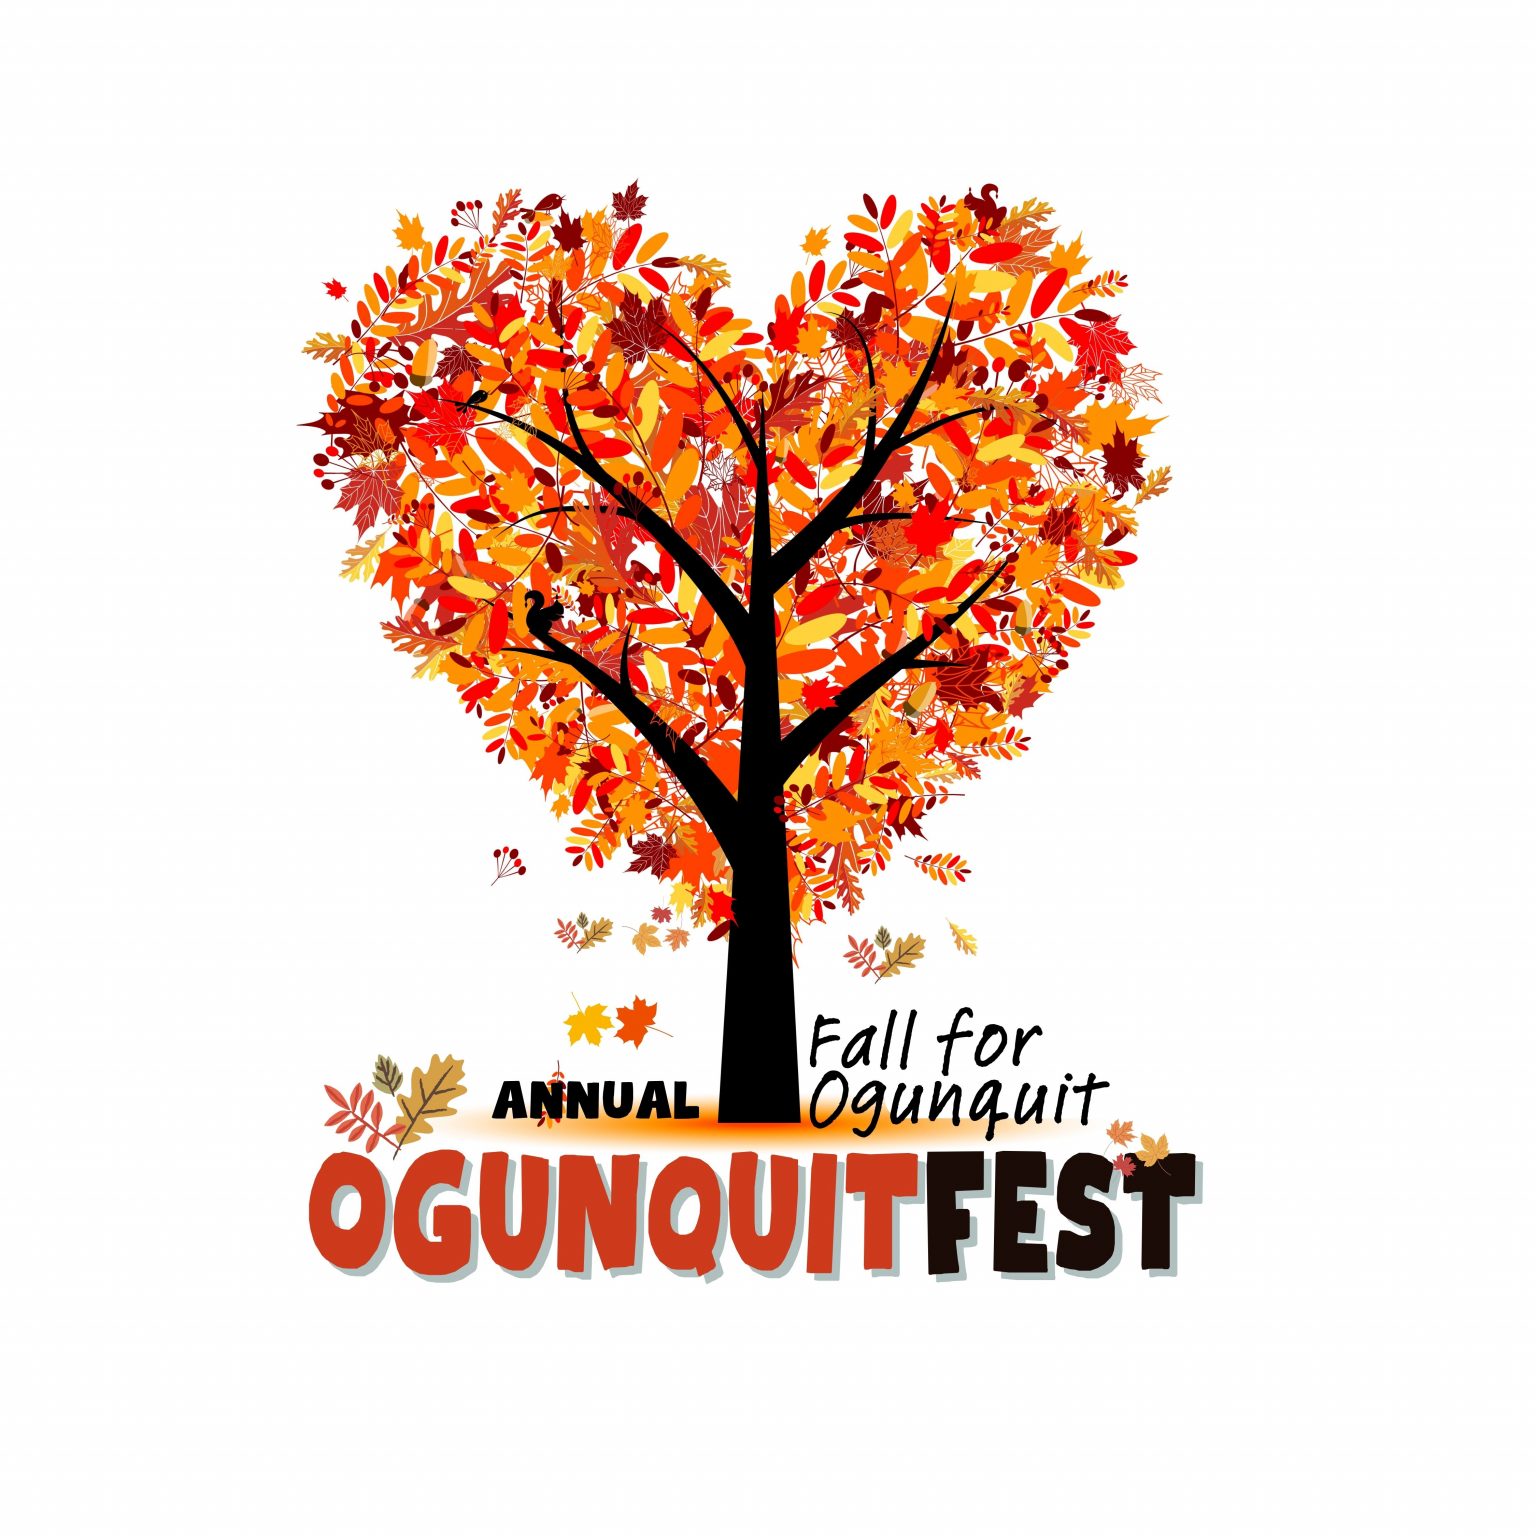 Fall for Ogunquit/OgunquitFest Ogunquit Chamber of Commerce